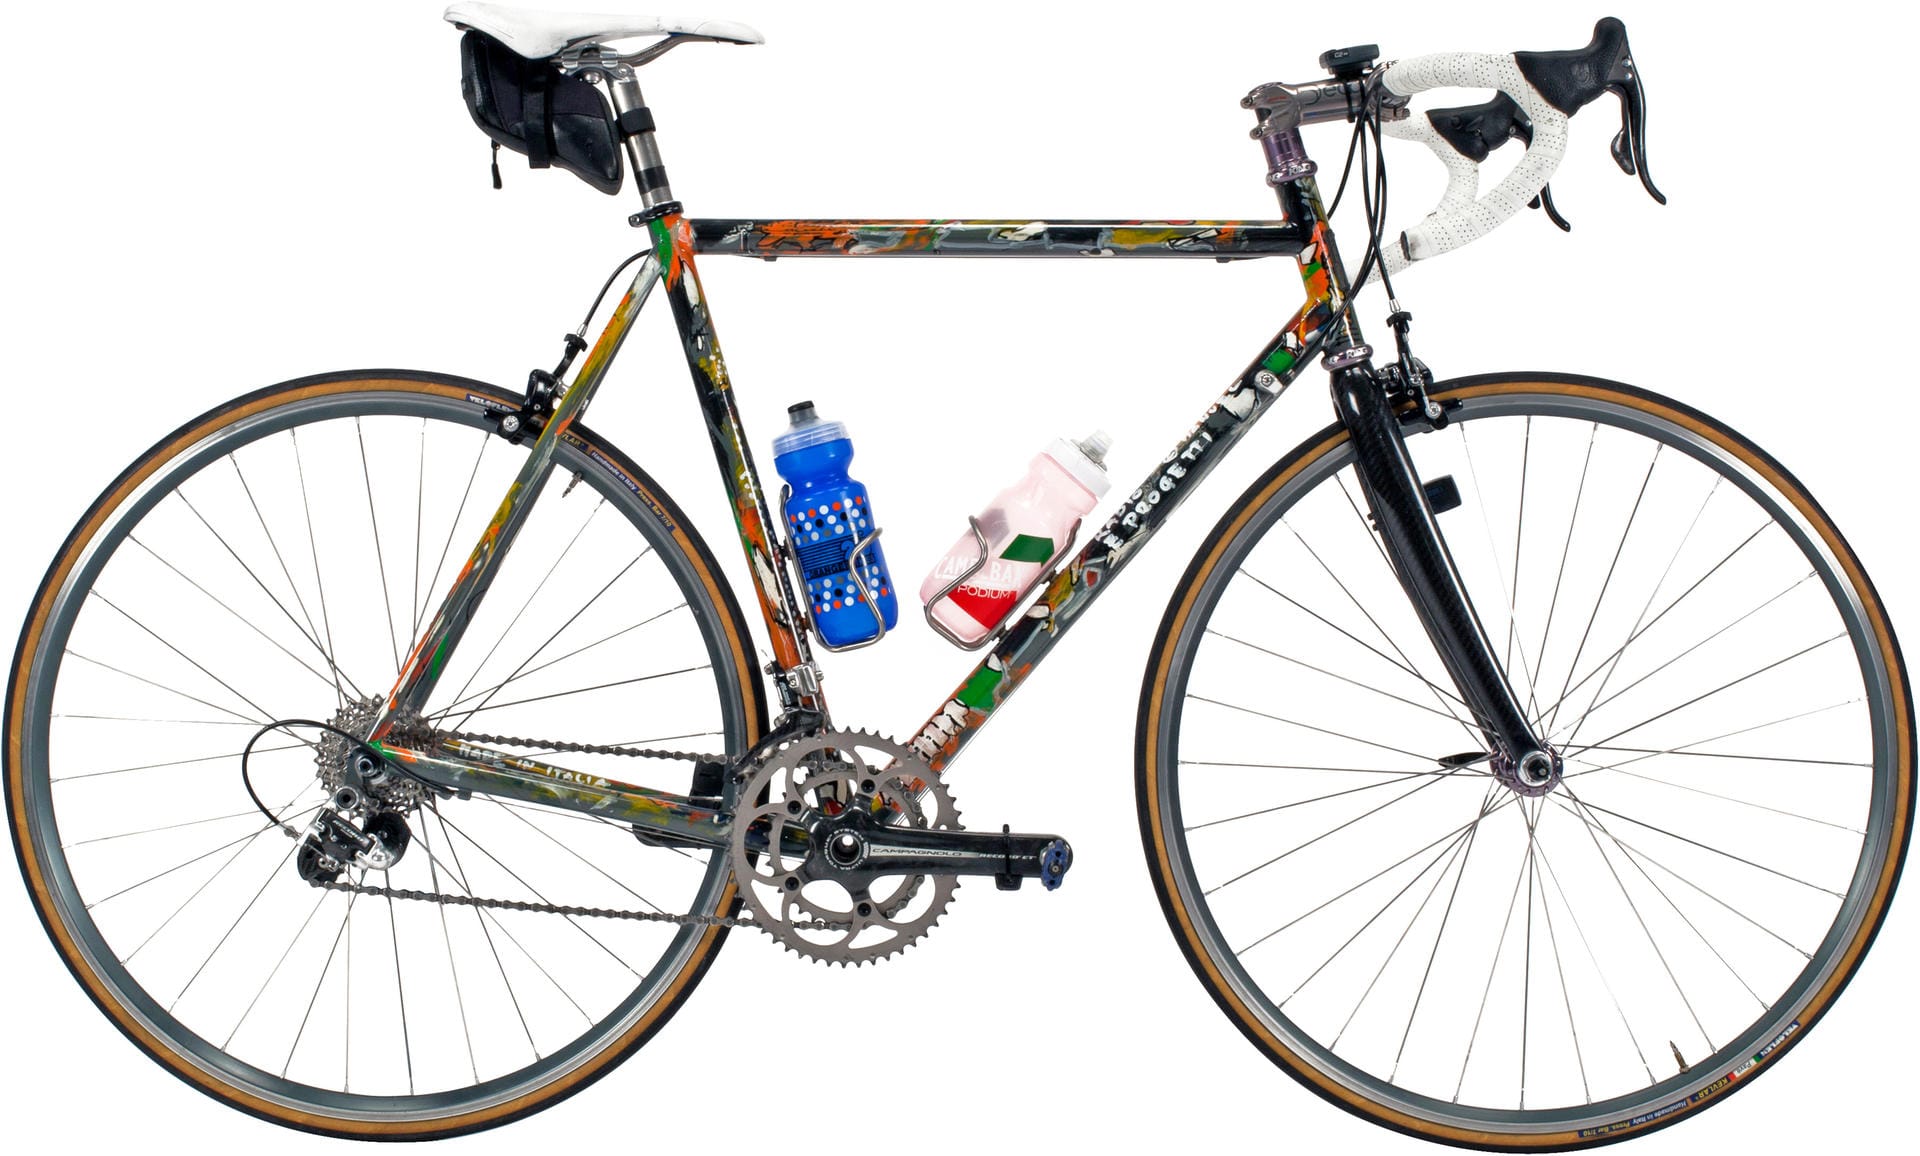 Eines der Highlights der Auktion ist dieses Bike von Dario Pegoretti, für das derzeit knapp 22.000.Dollar geboten werden.